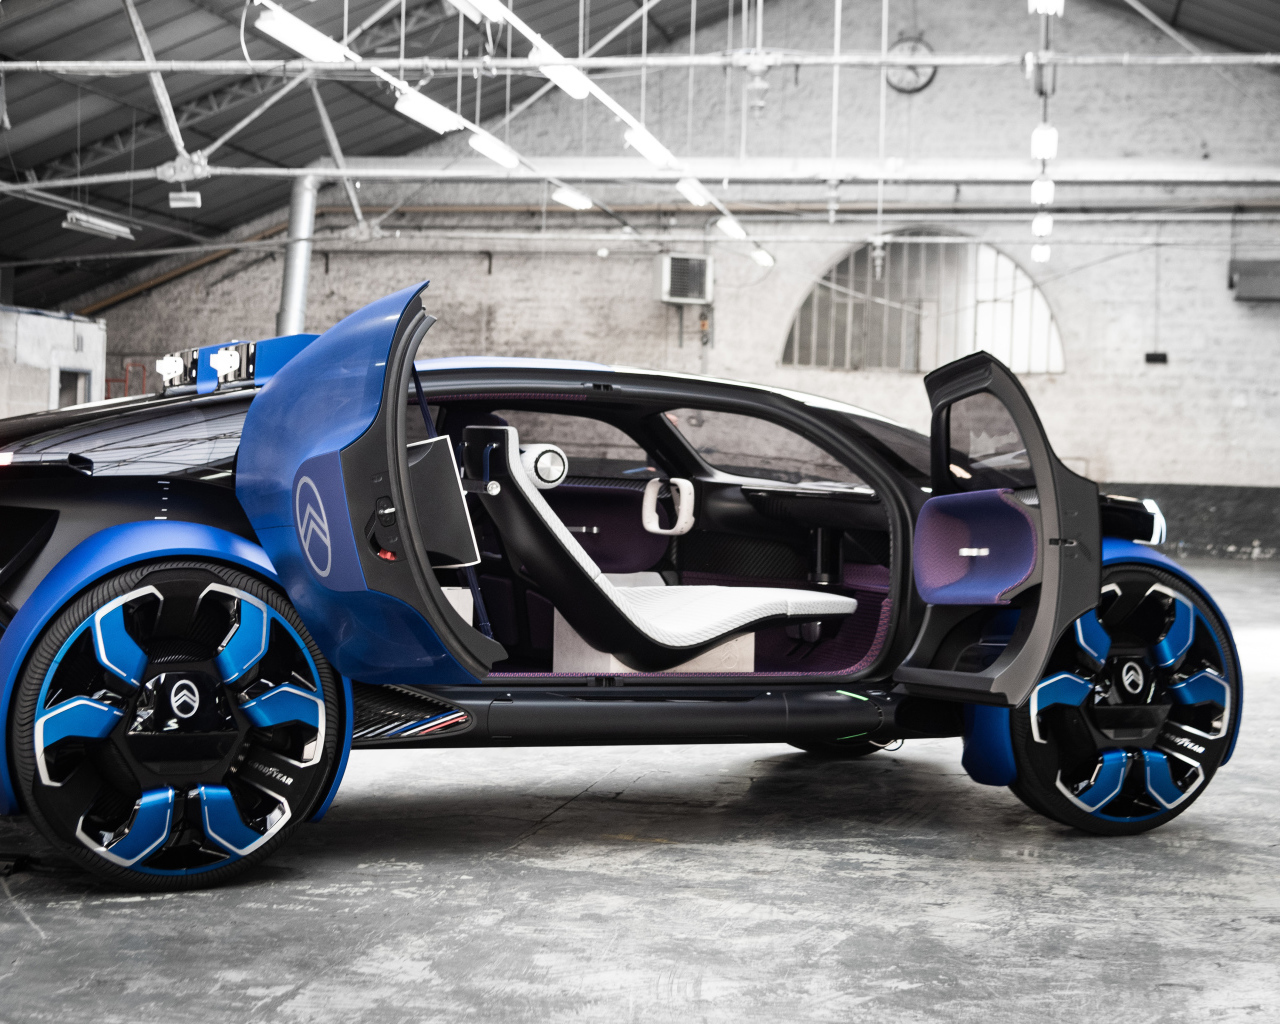 Автомобиль Citroen 19 19 Concept 2019 года